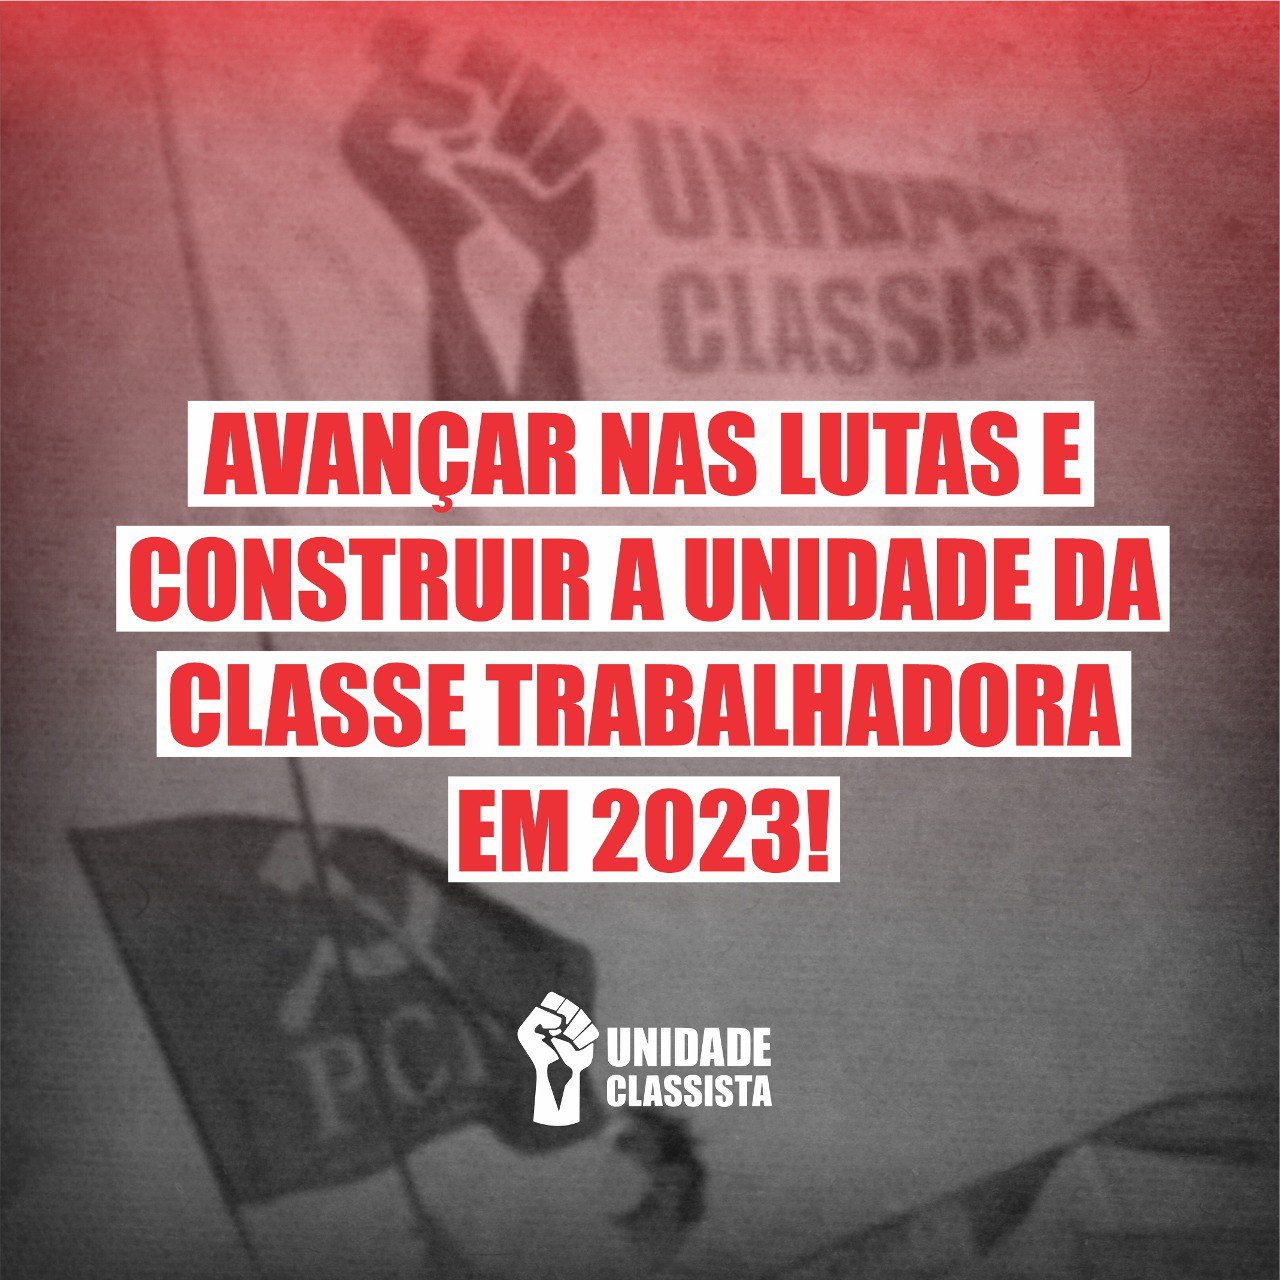 AVANÇAR NAS LUTAS E CONSTRUIR A UNIDADE DA CLASSE TRABALHADORA EM 2023